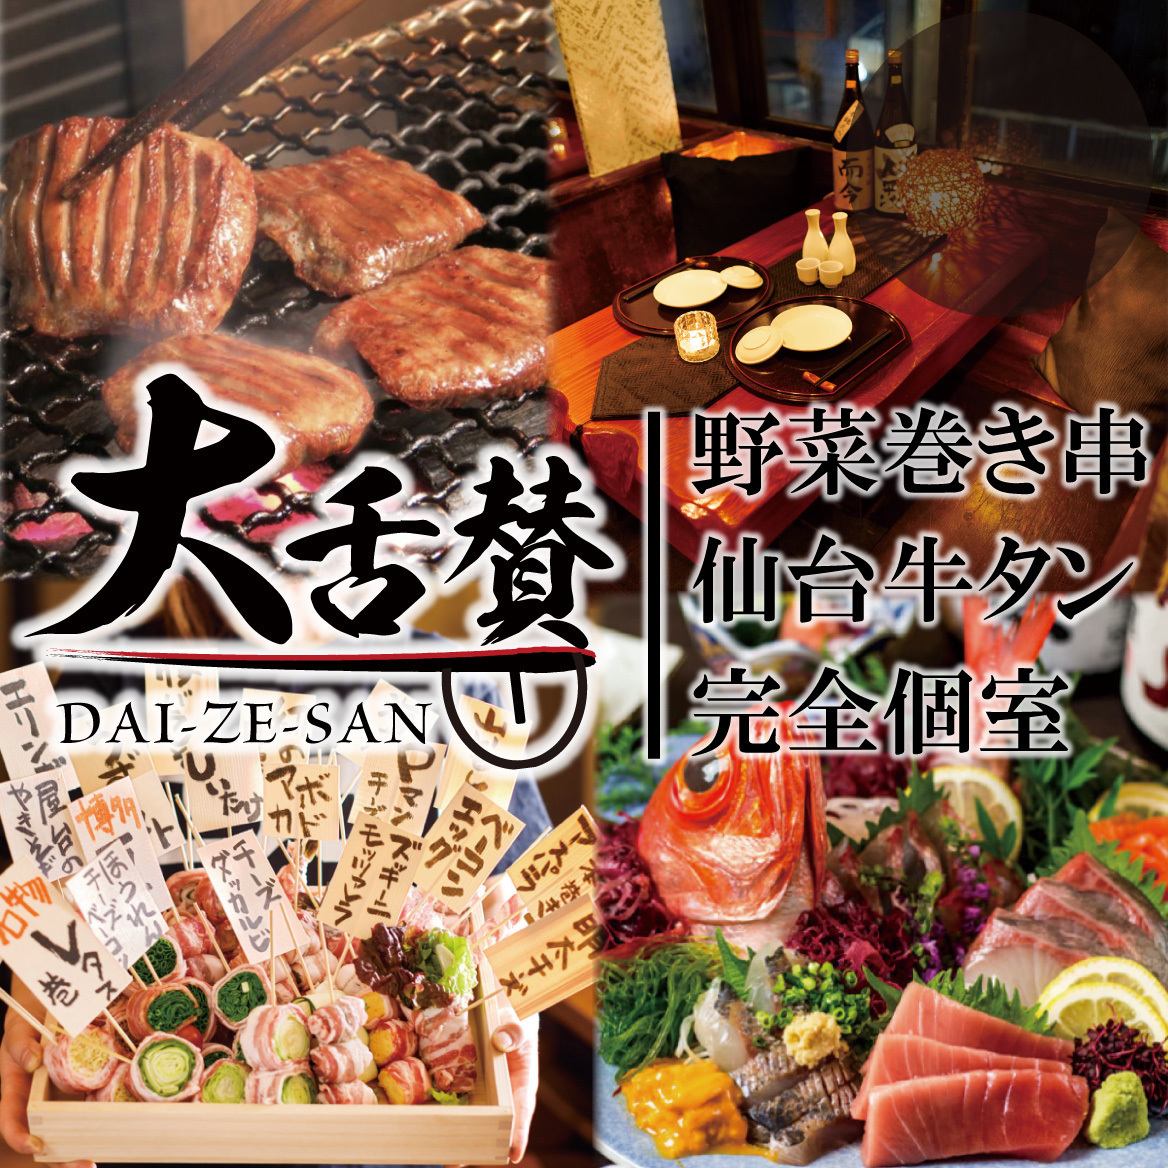 ■正宗日本料理×創意日本料理 大翼新宿東口店 ■24小時接受宴會、招待會/網上預約